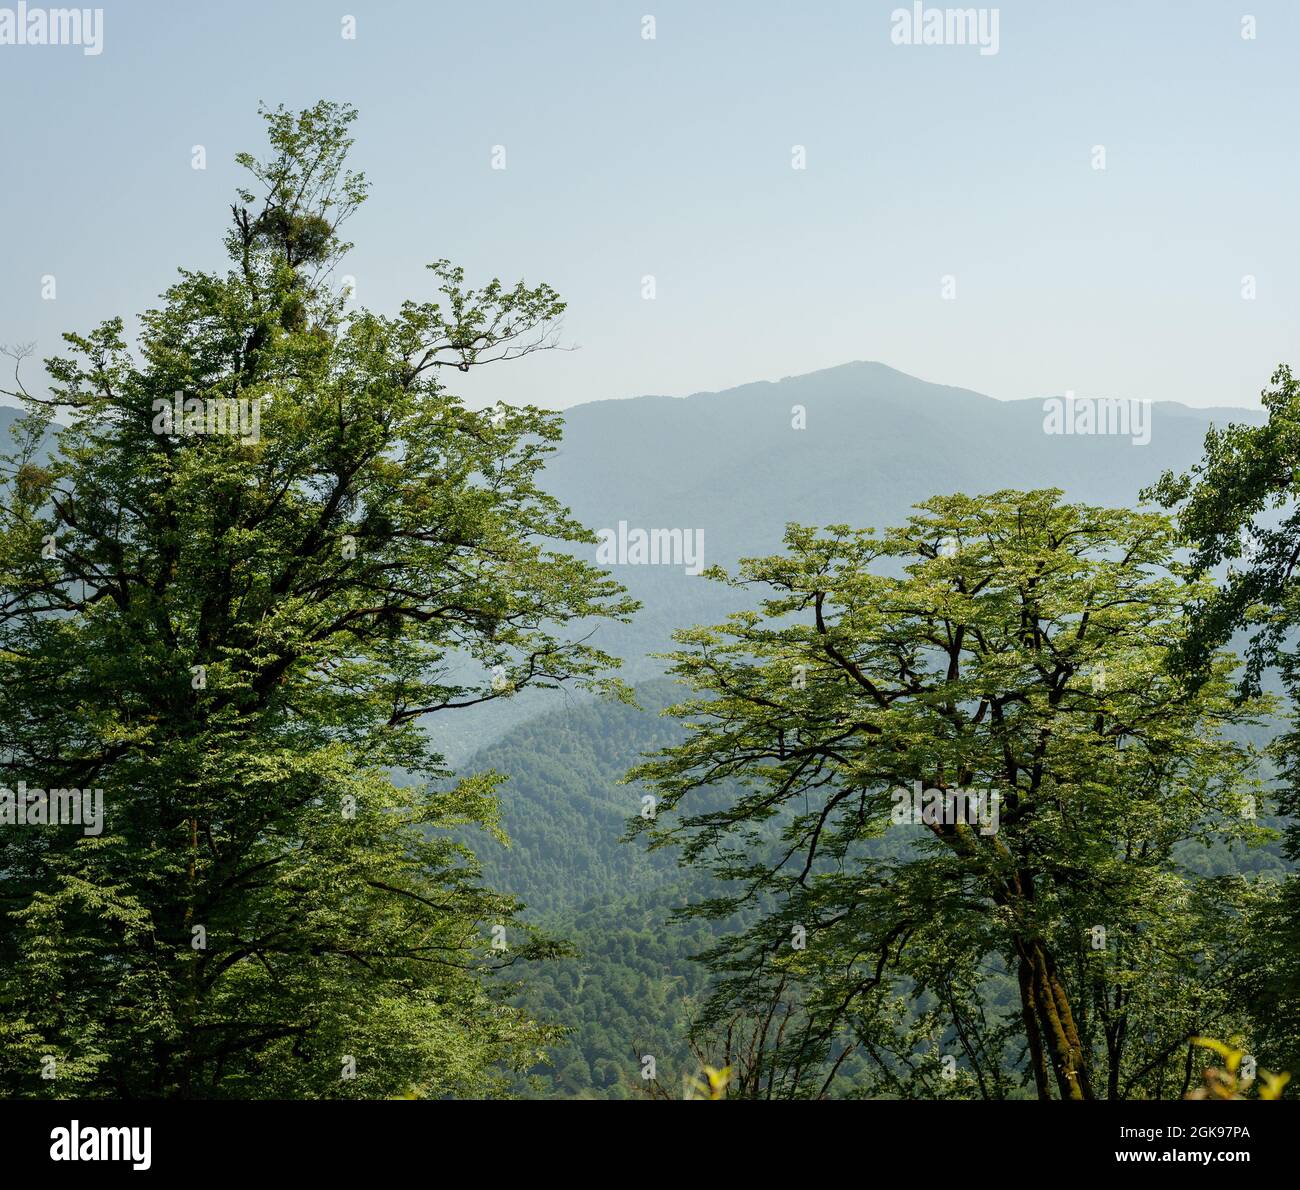 Foresta di faggi con alberi molto vecchi alla luce del sole, provincia di gilan, iran Foto Stock